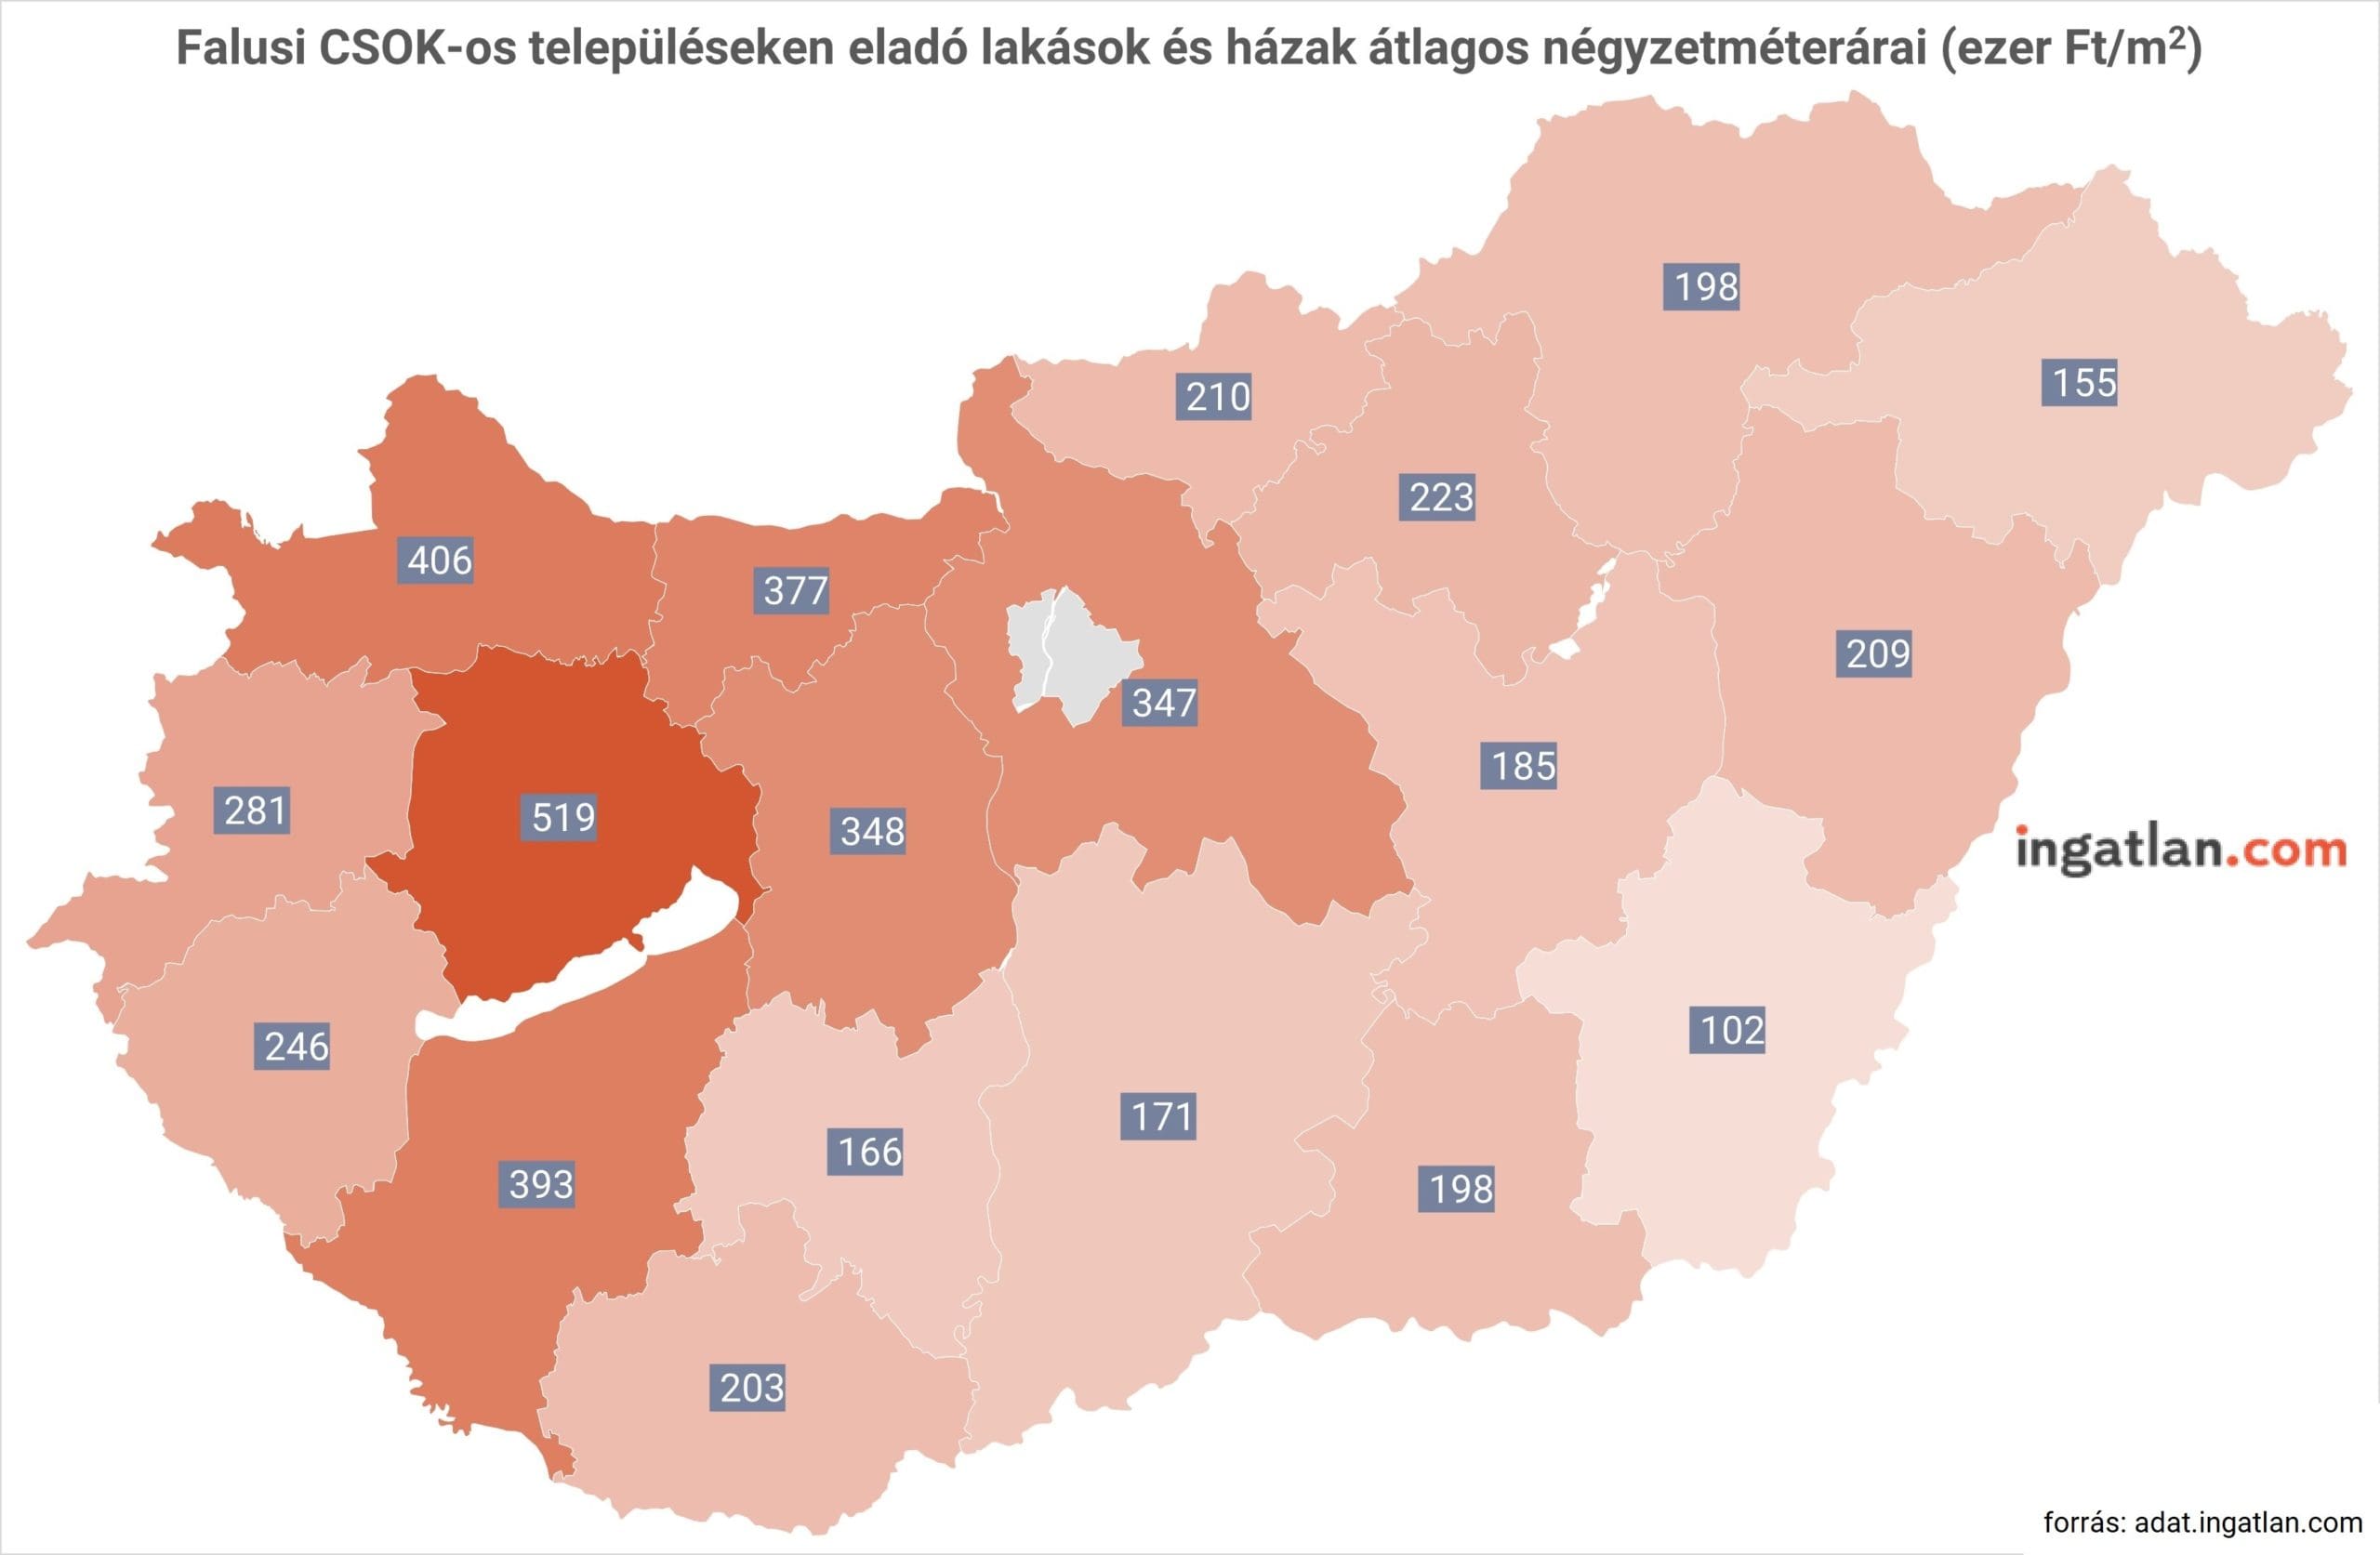 Falusi CSOK települések átlagos négyzetéméterárak vármegyék